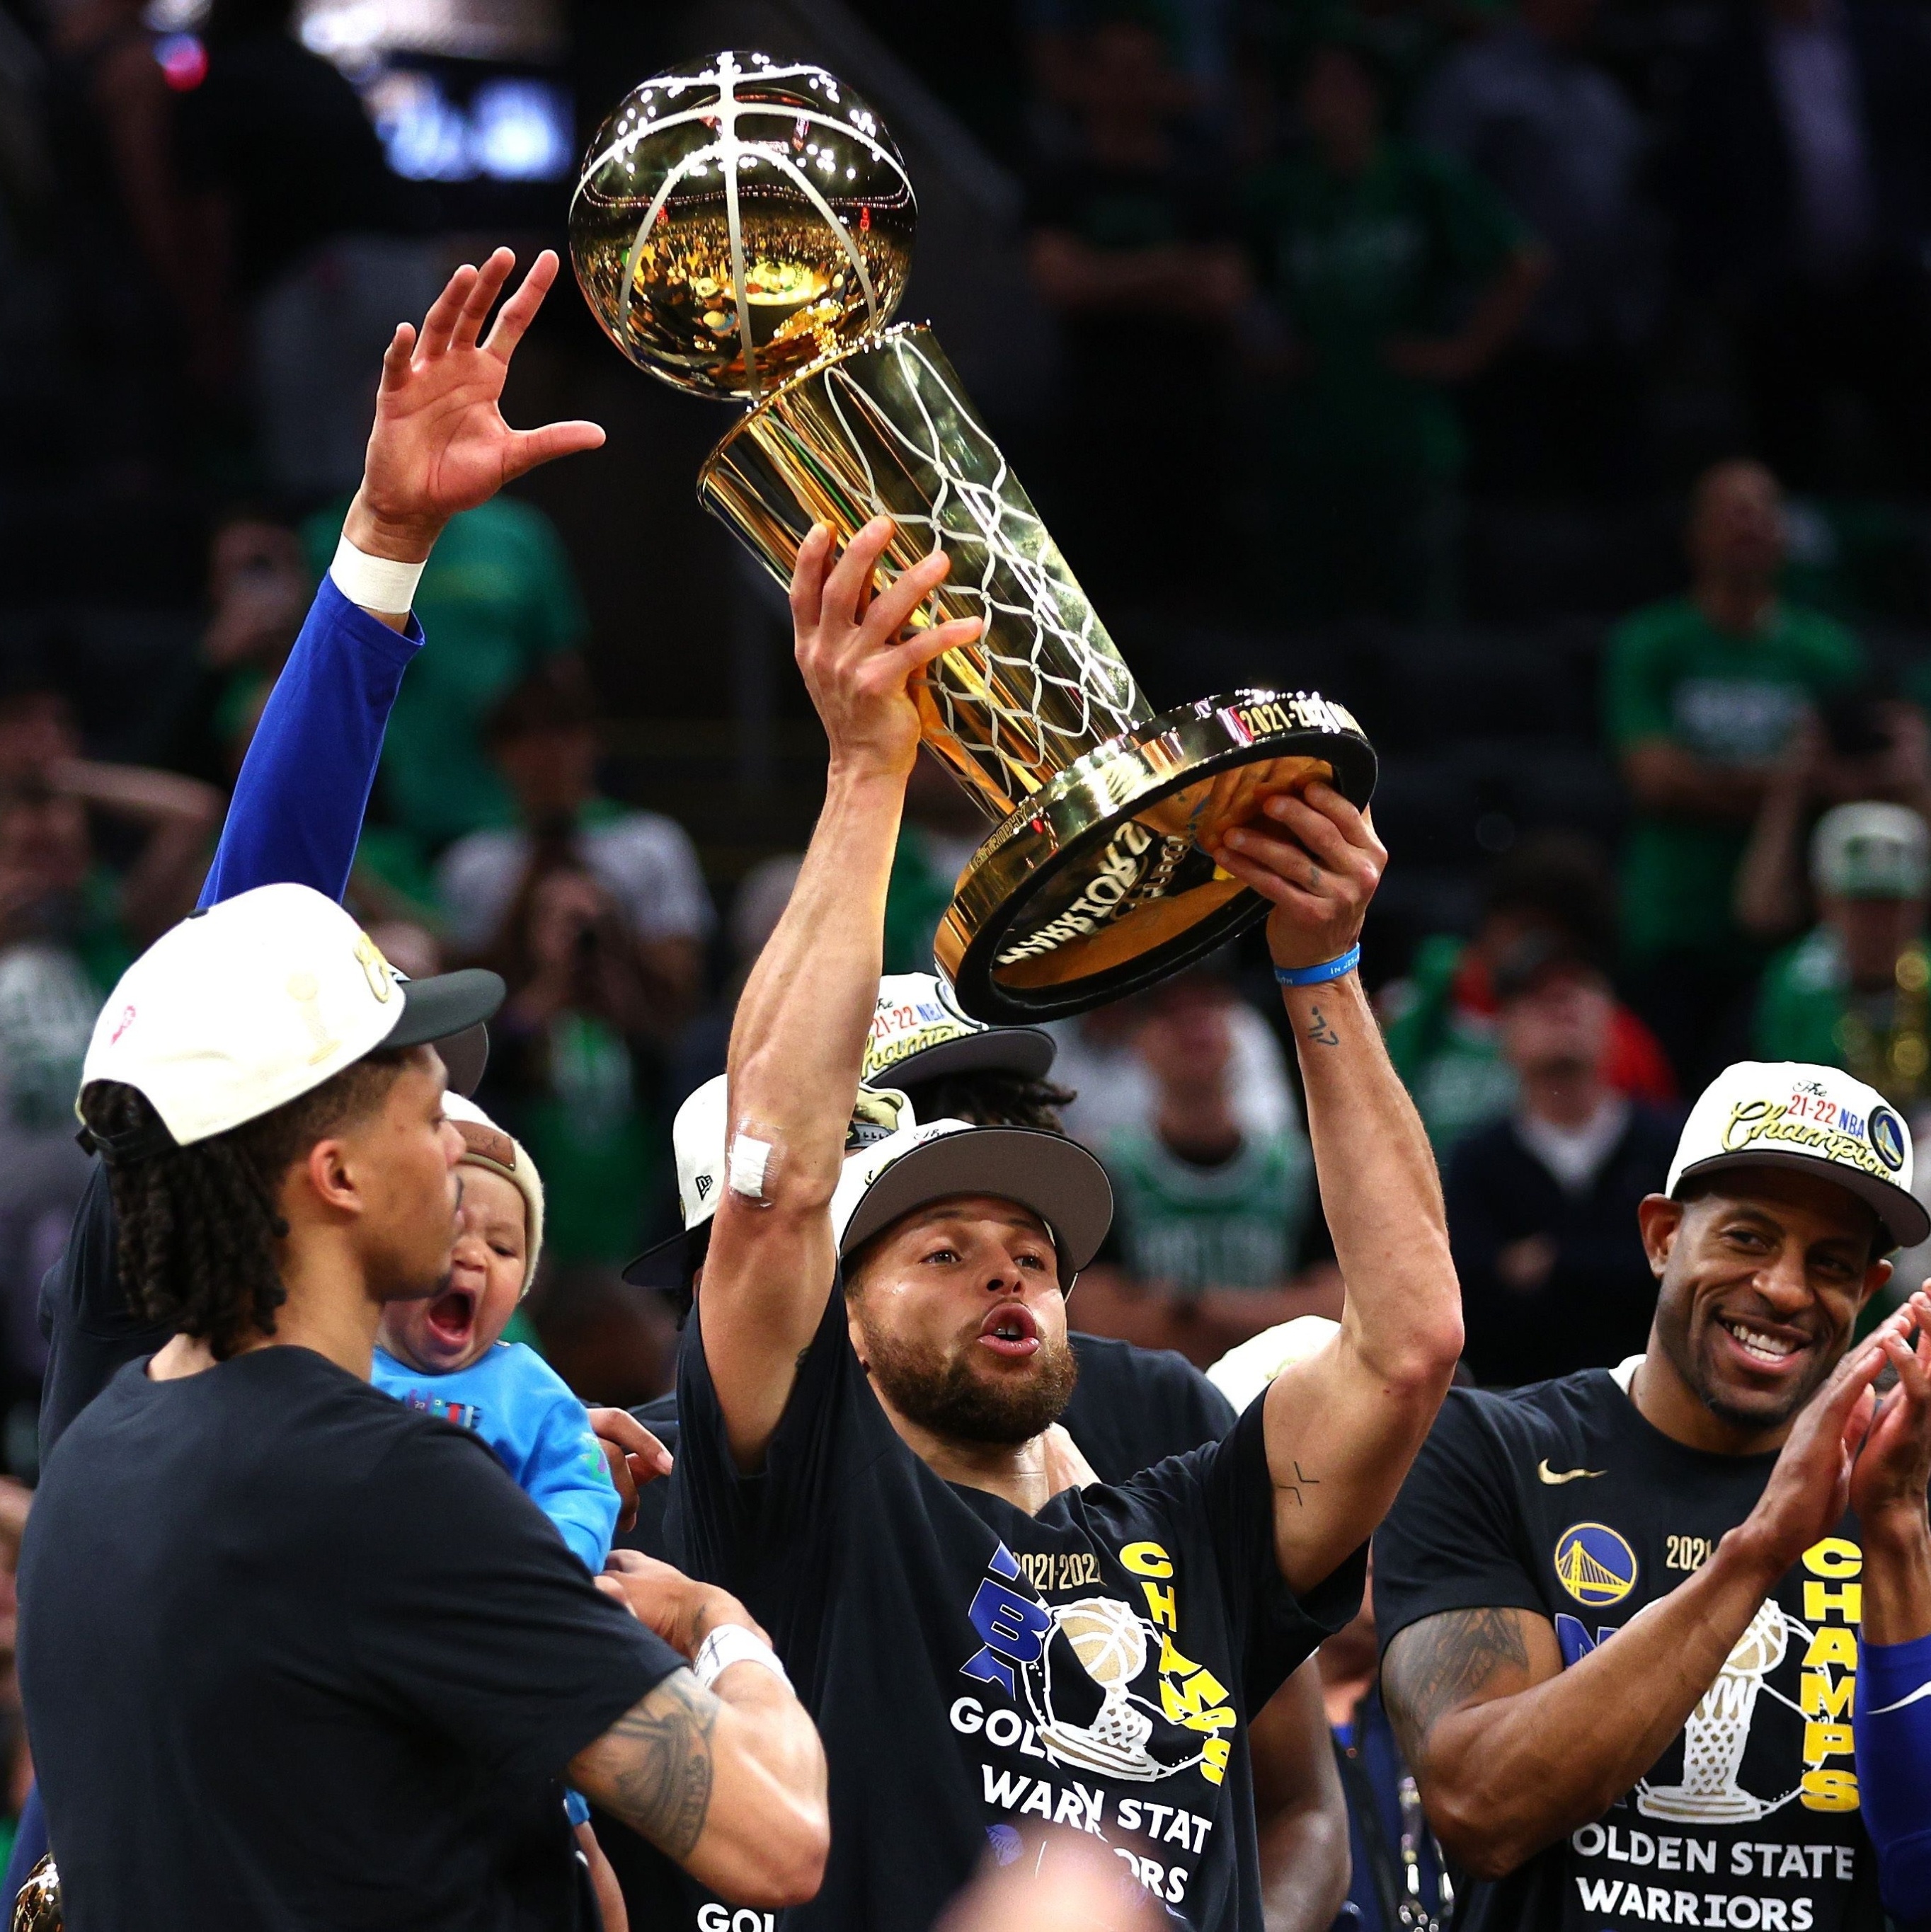 NBA: As expectativas para as finais e o legado de Curry - Desporto